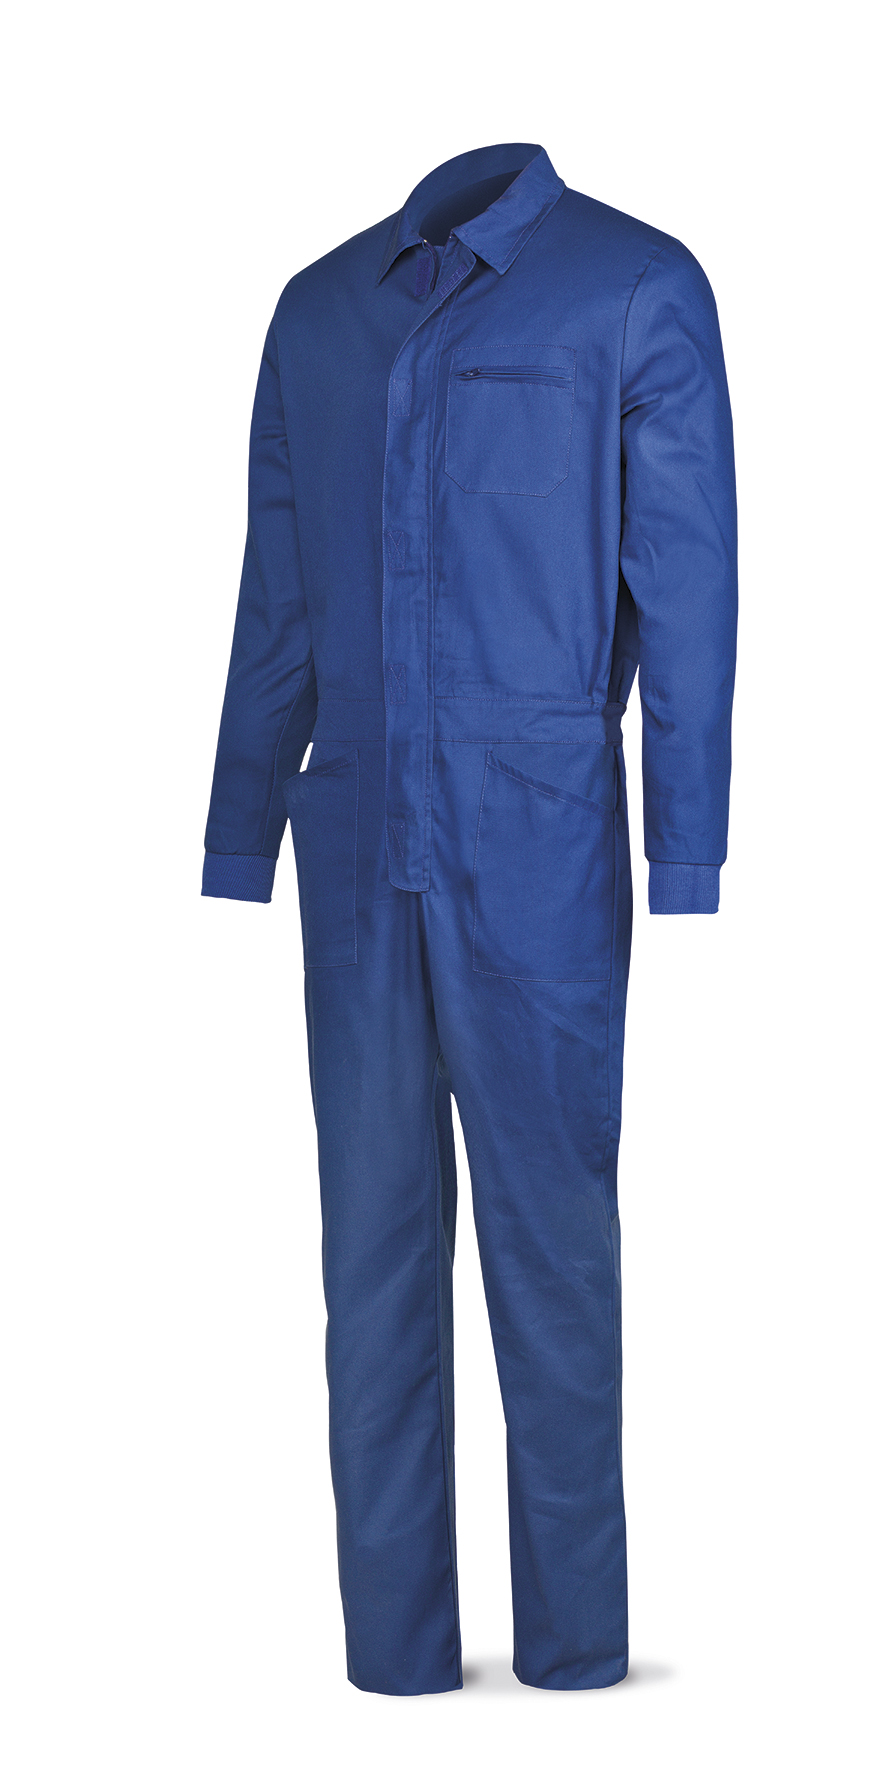 388-B Vetements de travail laboral Série Basics Bleu coton 200 g. bleu roi.